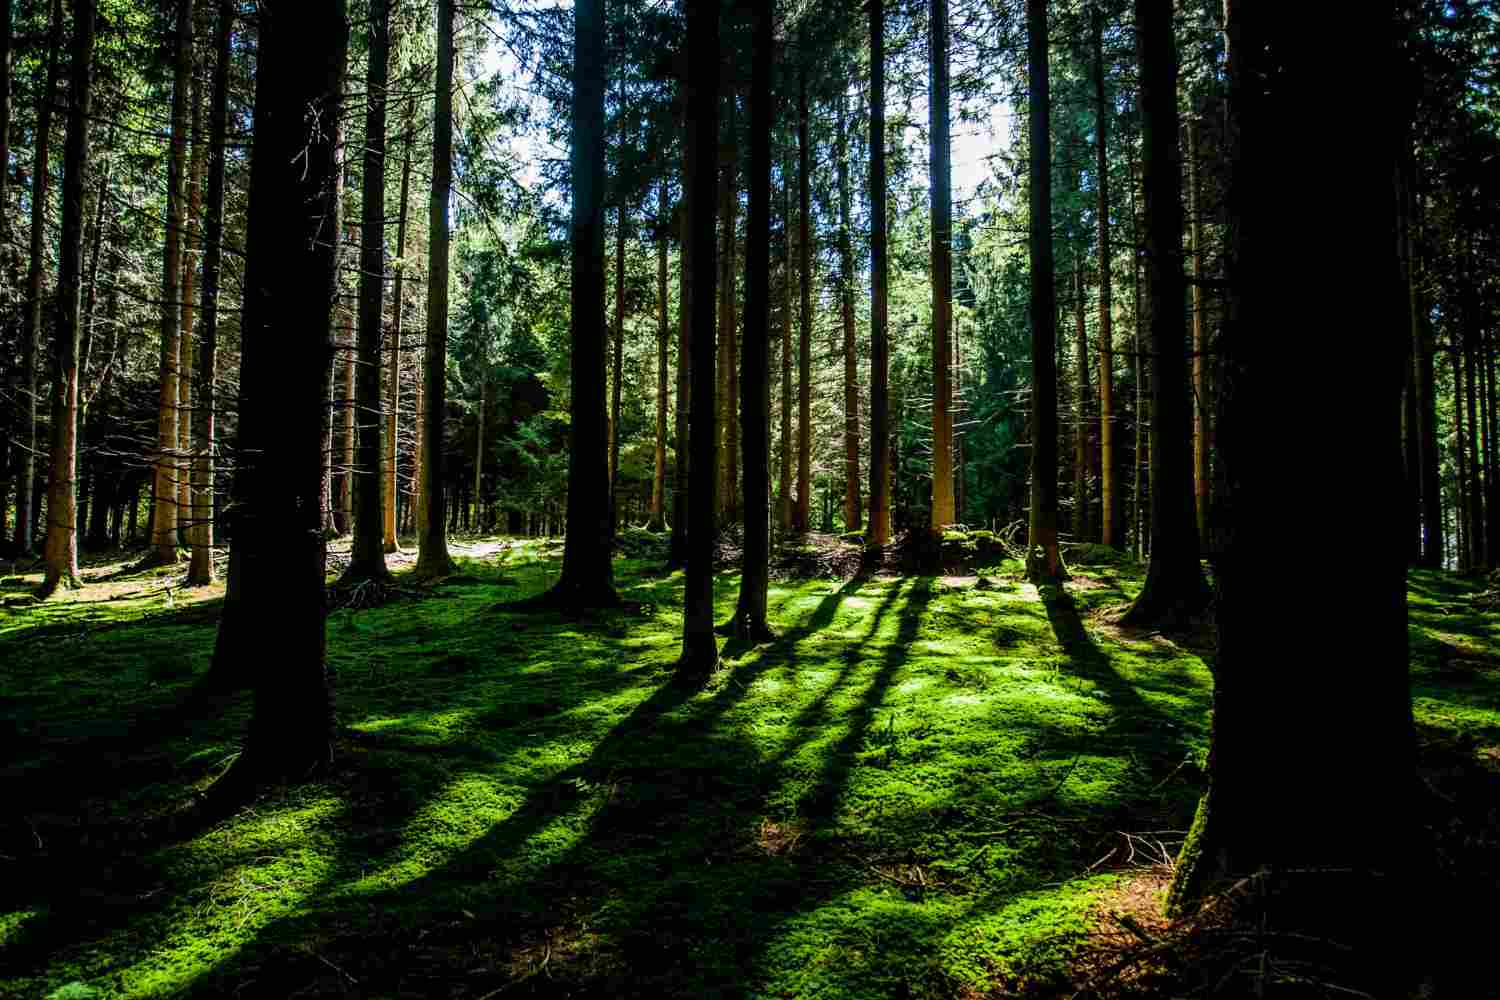 3. La importancia de la biodiversidad en los bosques